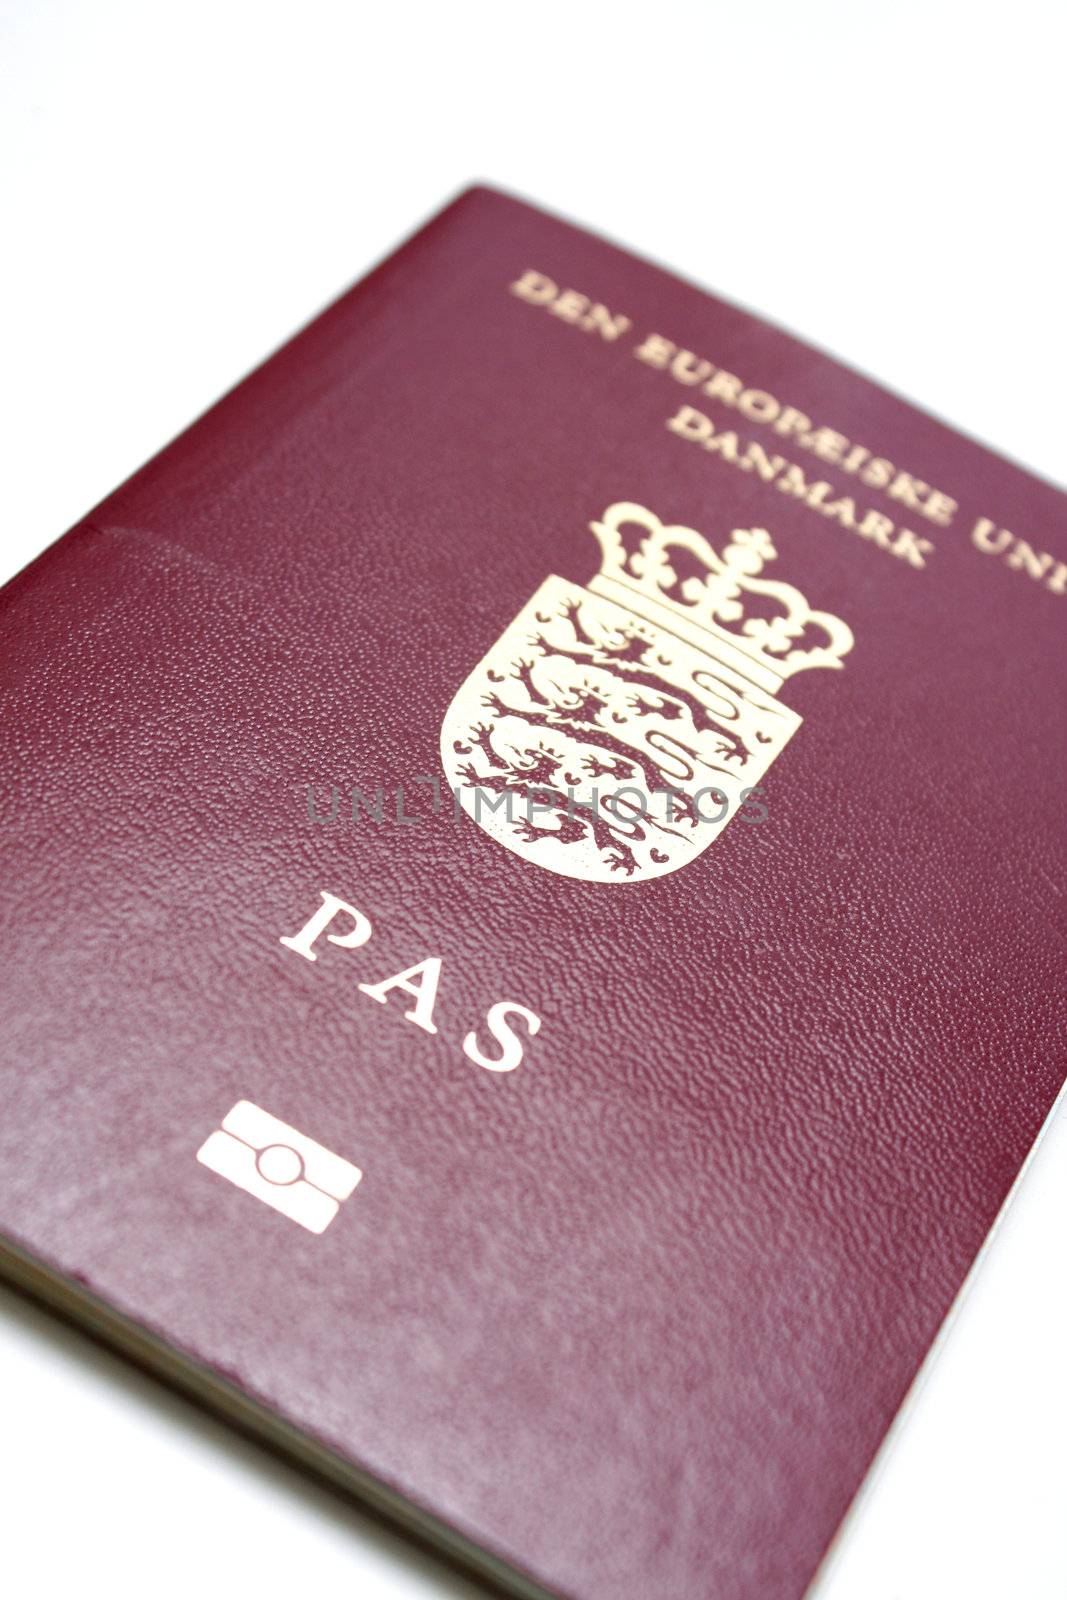 A modern Danish passport